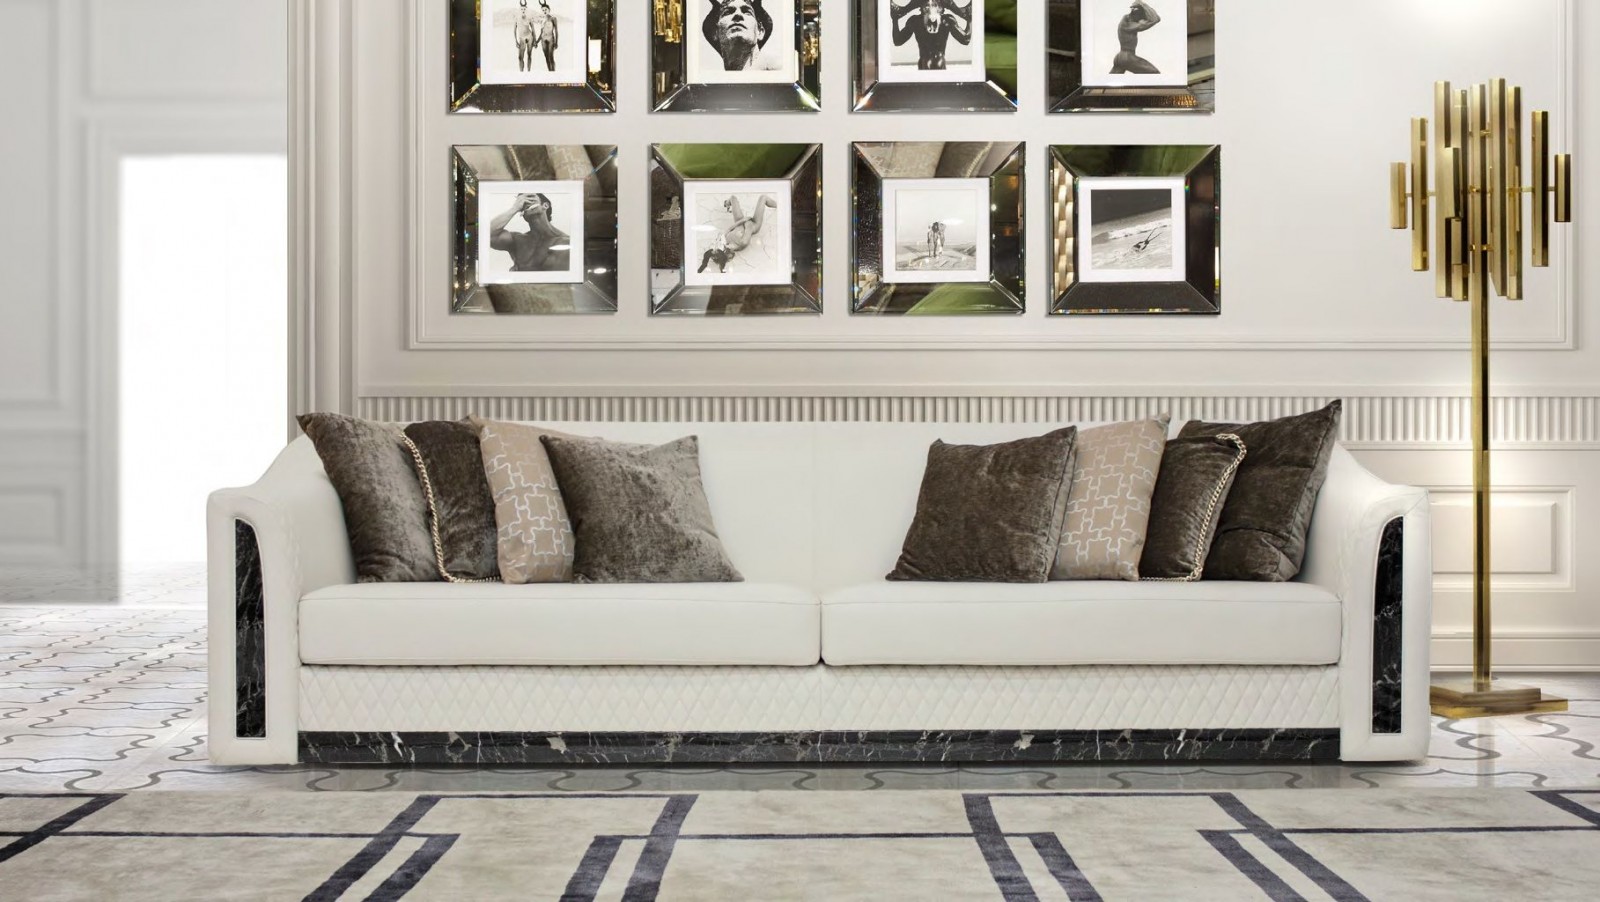 Диван - fmi/784. Белый кожаный диван с черными мраморными вставками отфабрики Formitalia